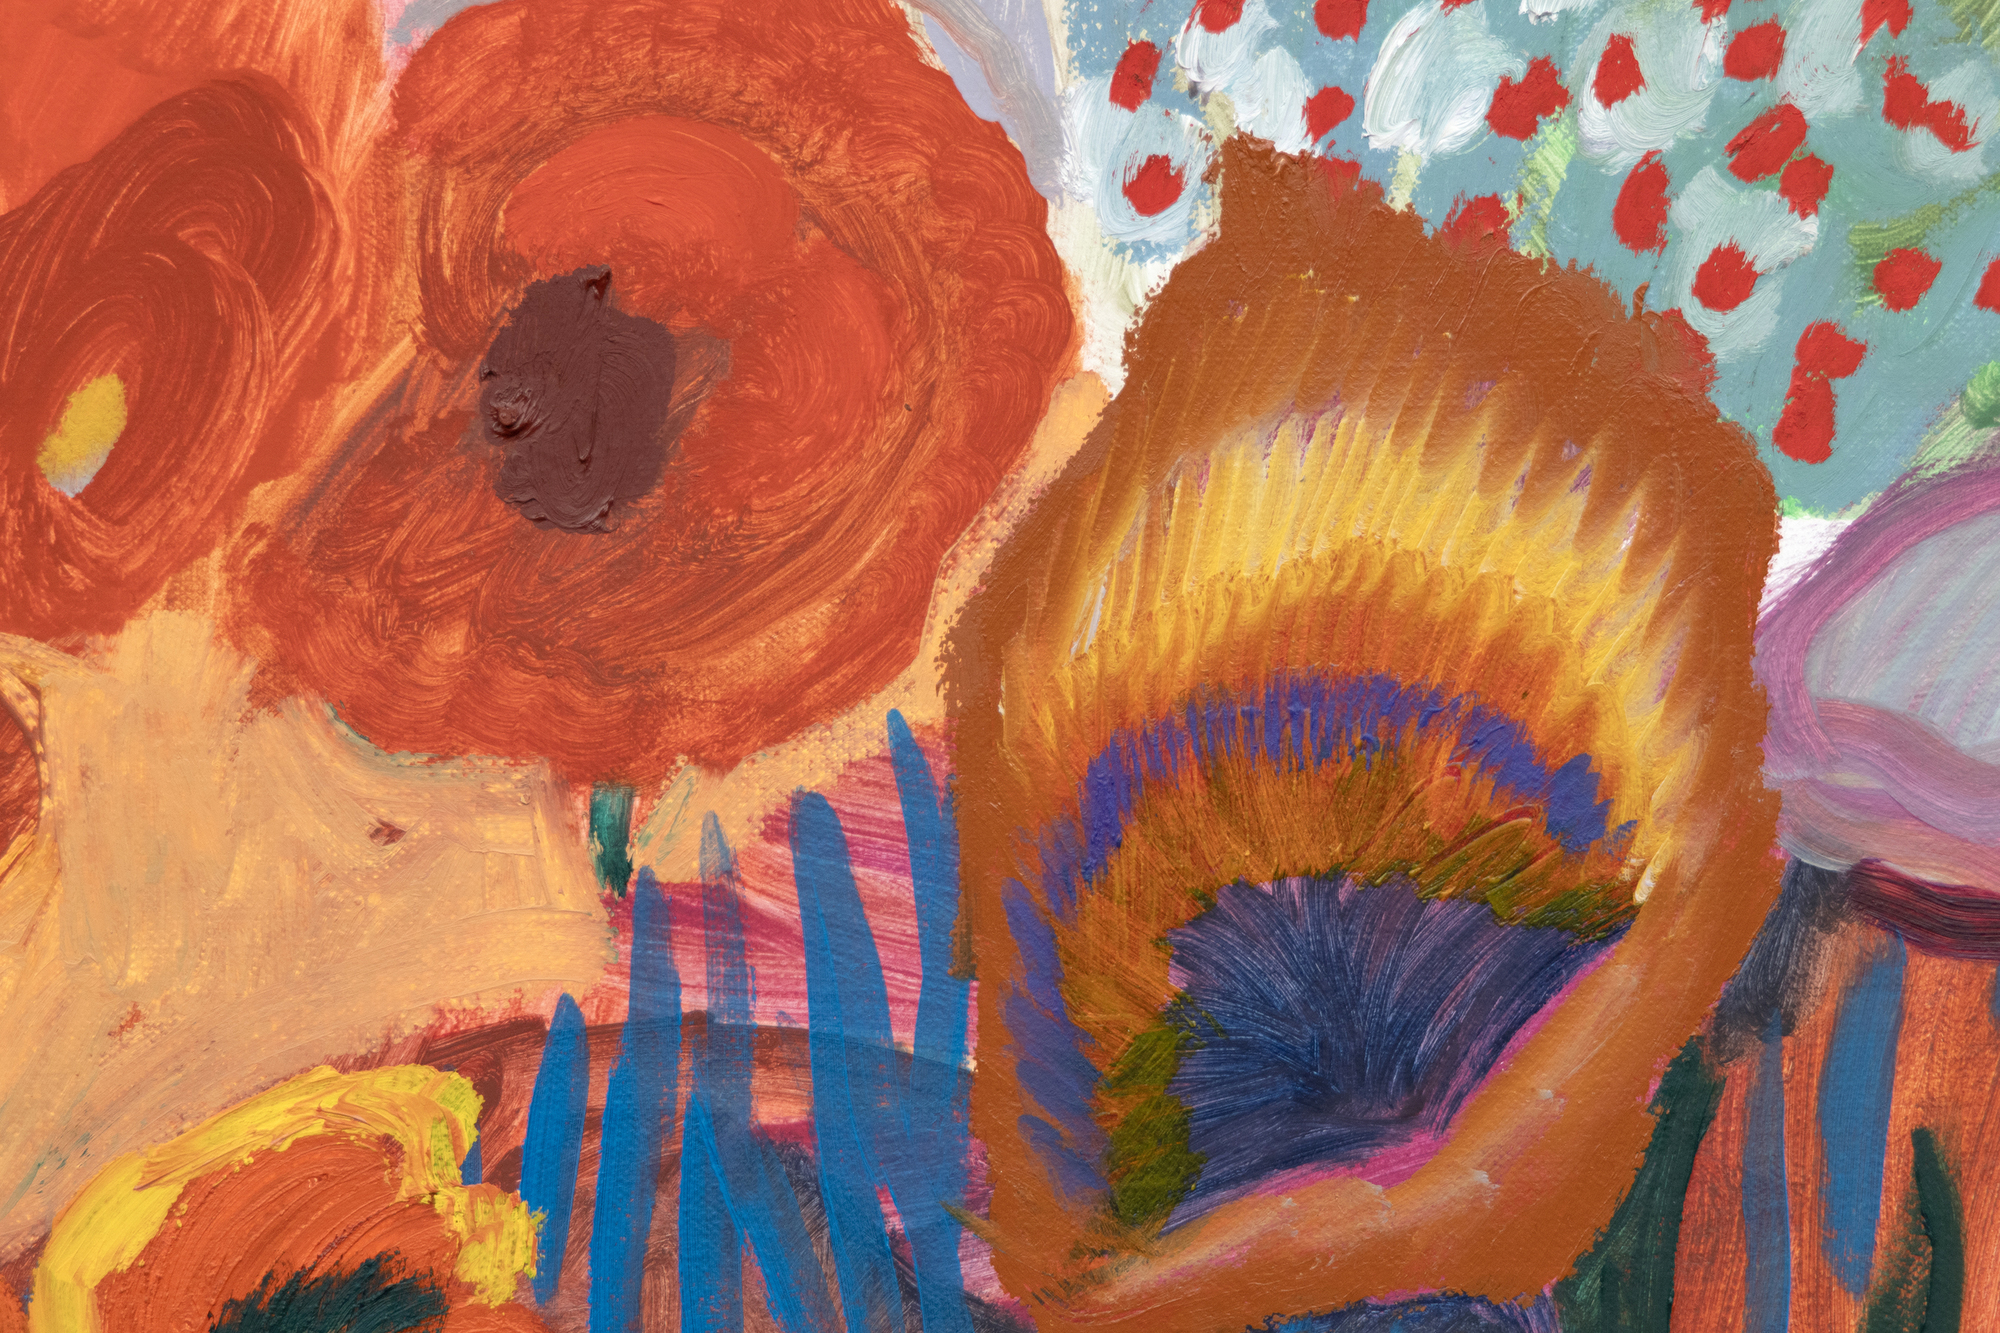 Die 1981 in Atlanta geborene und in Brooklyn lebende Shara Hughes wird für ihre unverwechselbare Herangehensweise an die Landschaftsmalerei gefeiert, die historische Einflüsse mit zeitgenössischer Sensibilität verbindet. Ihre jubilierende Farbpalette erinnert an Meister wie Henri Matisse, die sie mit der stilvollen, visuellen Kühnheit von David Hockney wiedergibt, während sie gleichzeitig eine breitere Tradition der Landschaftsmalerei anerkennt, die Einflüsse des Jugendstils, des Fauvismus und des deutschen Expressionismus einschließt. All the Pretty Faces ist eine moderne Synthese aus historischen Kunstbewegungen und aktueller digitaler Bildsprache, die dem Betrachter fesselnde, erfundene Welten präsentiert, die eine Brücke zwischen Vergangenheit und Gegenwart schlagen. Es spricht auch eines der markantesten Zitate von Hughes über ihre innovativen Landschaften voller fantastischer Elemente an: &quot;Ich habe mir die Blumen und Bäume oft als Figuren vorgestellt. Manchmal nimmt sogar eine Welle oder eine Sonne auf dem Bild eine Persönlichkeit an, das hängt also davon ab, wie das Werk ausfällt.&quot;